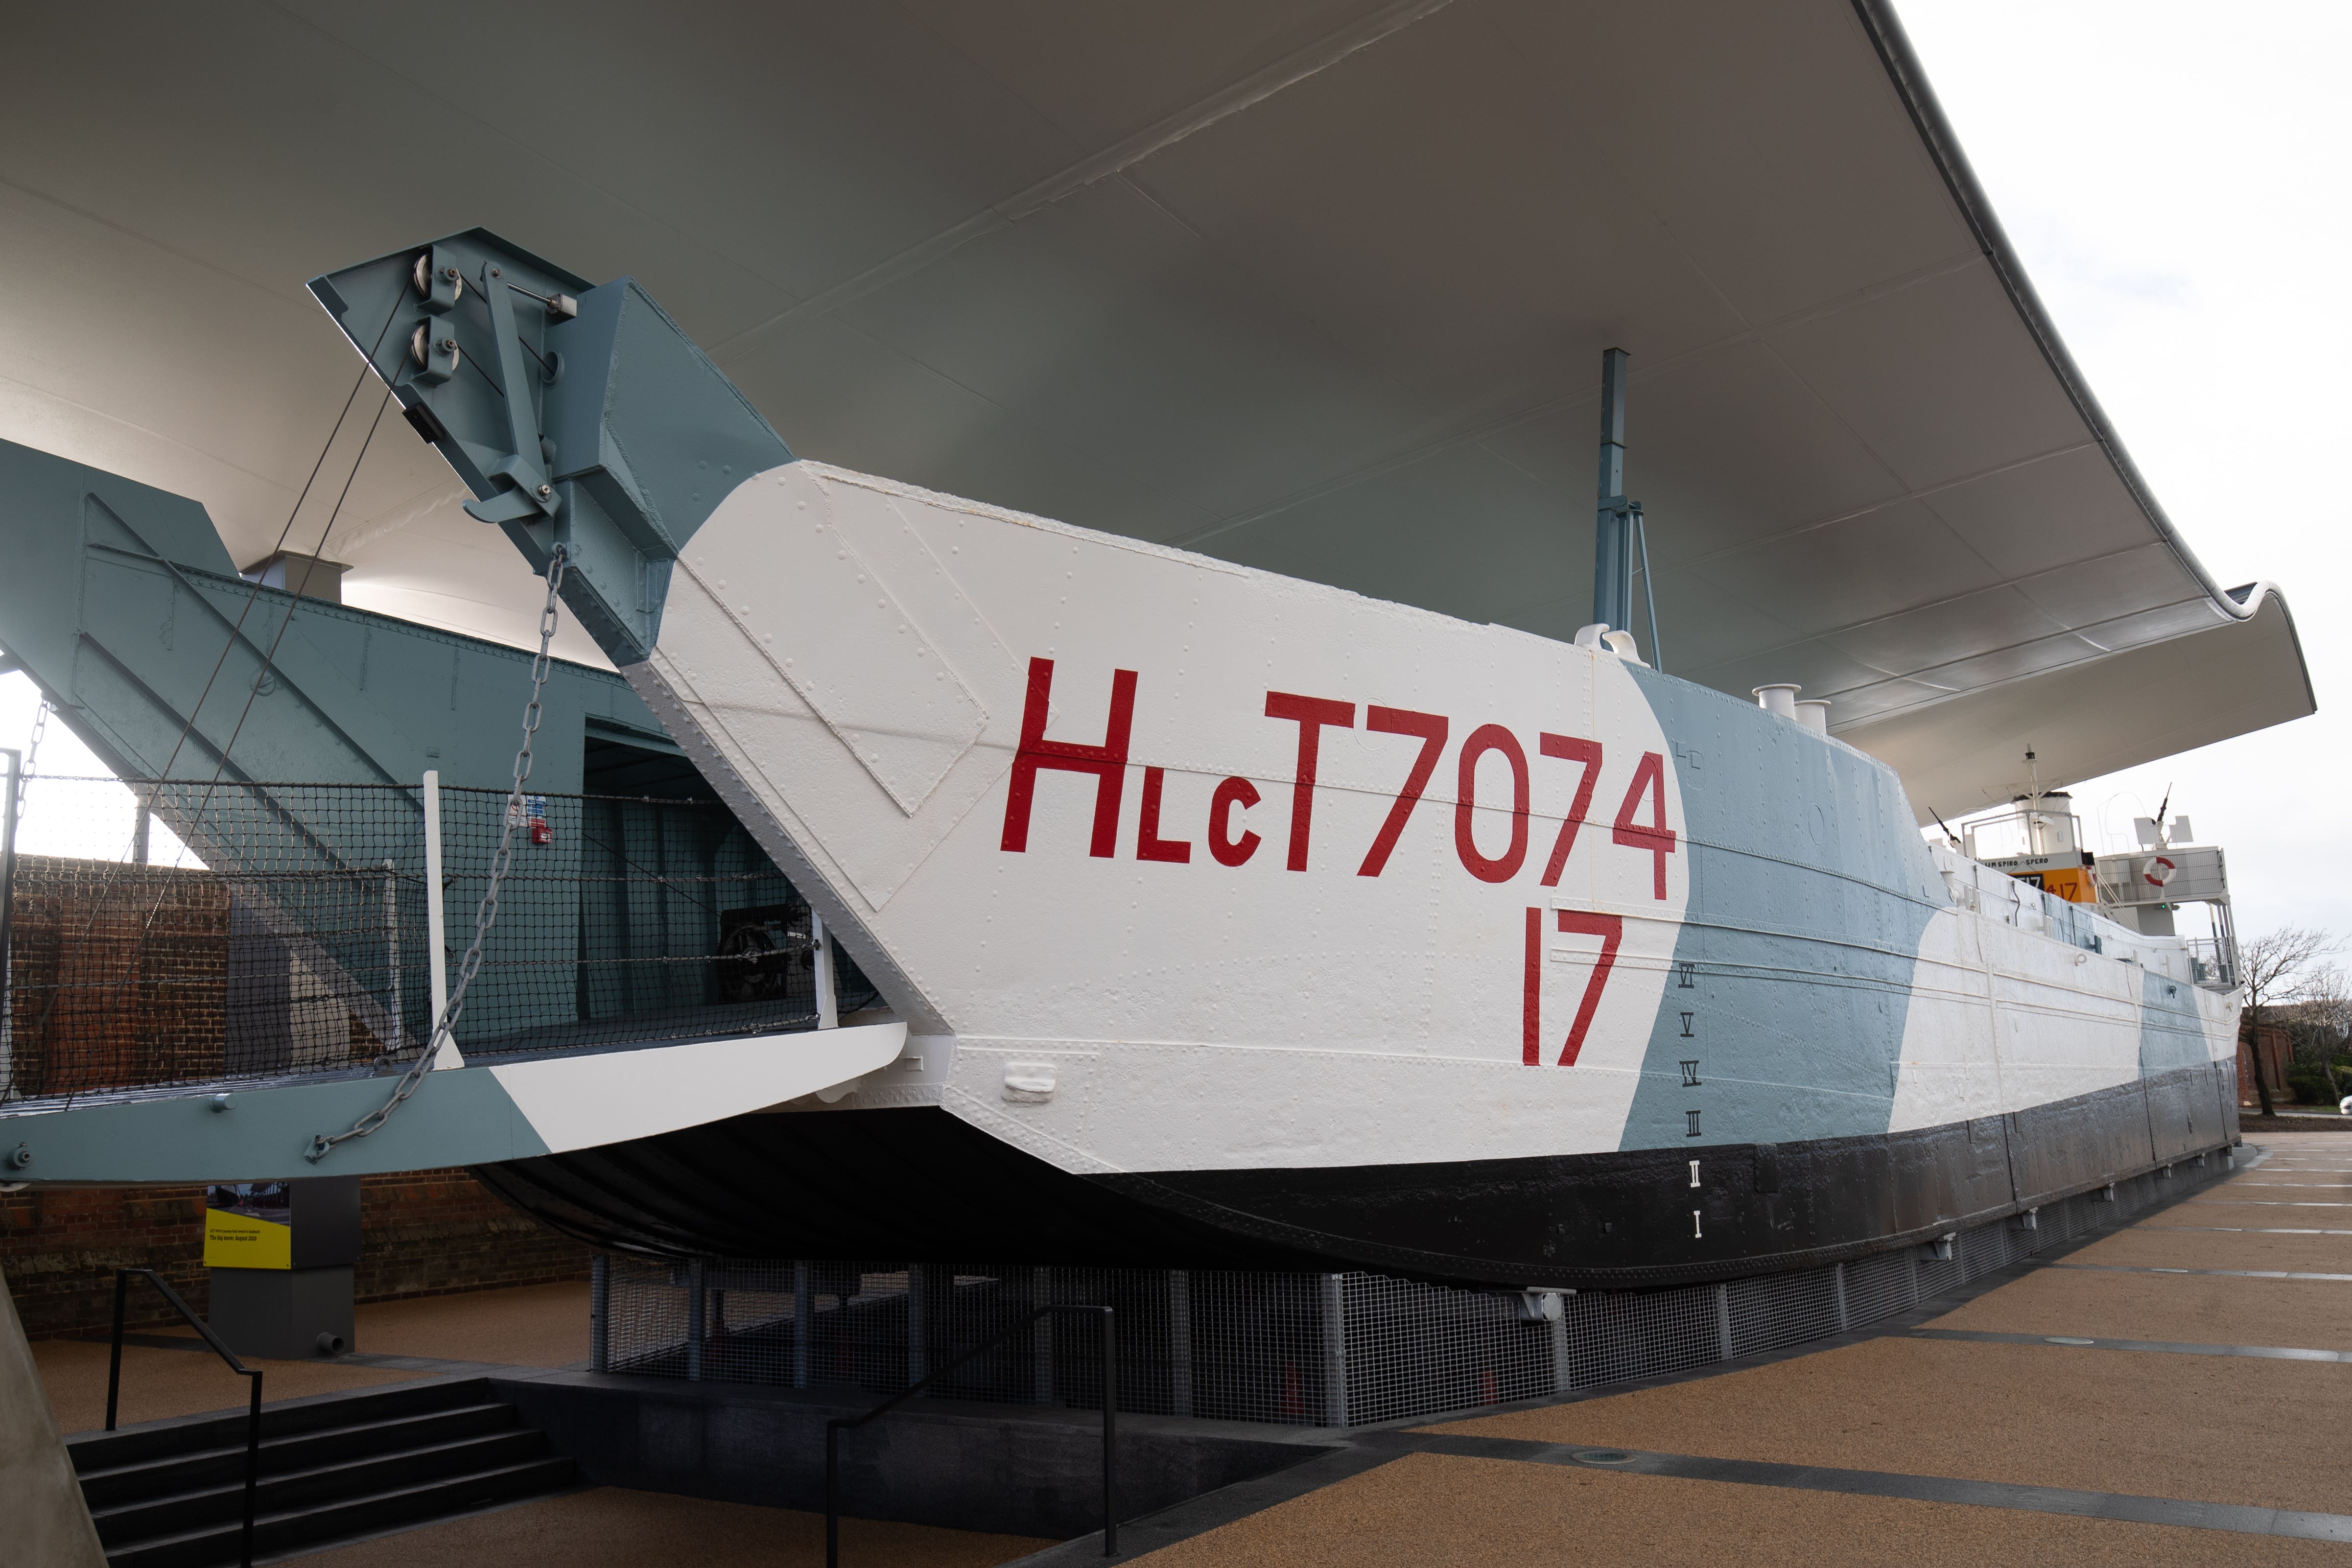 A restored Second World War landing craft LCT 7074 (PA)